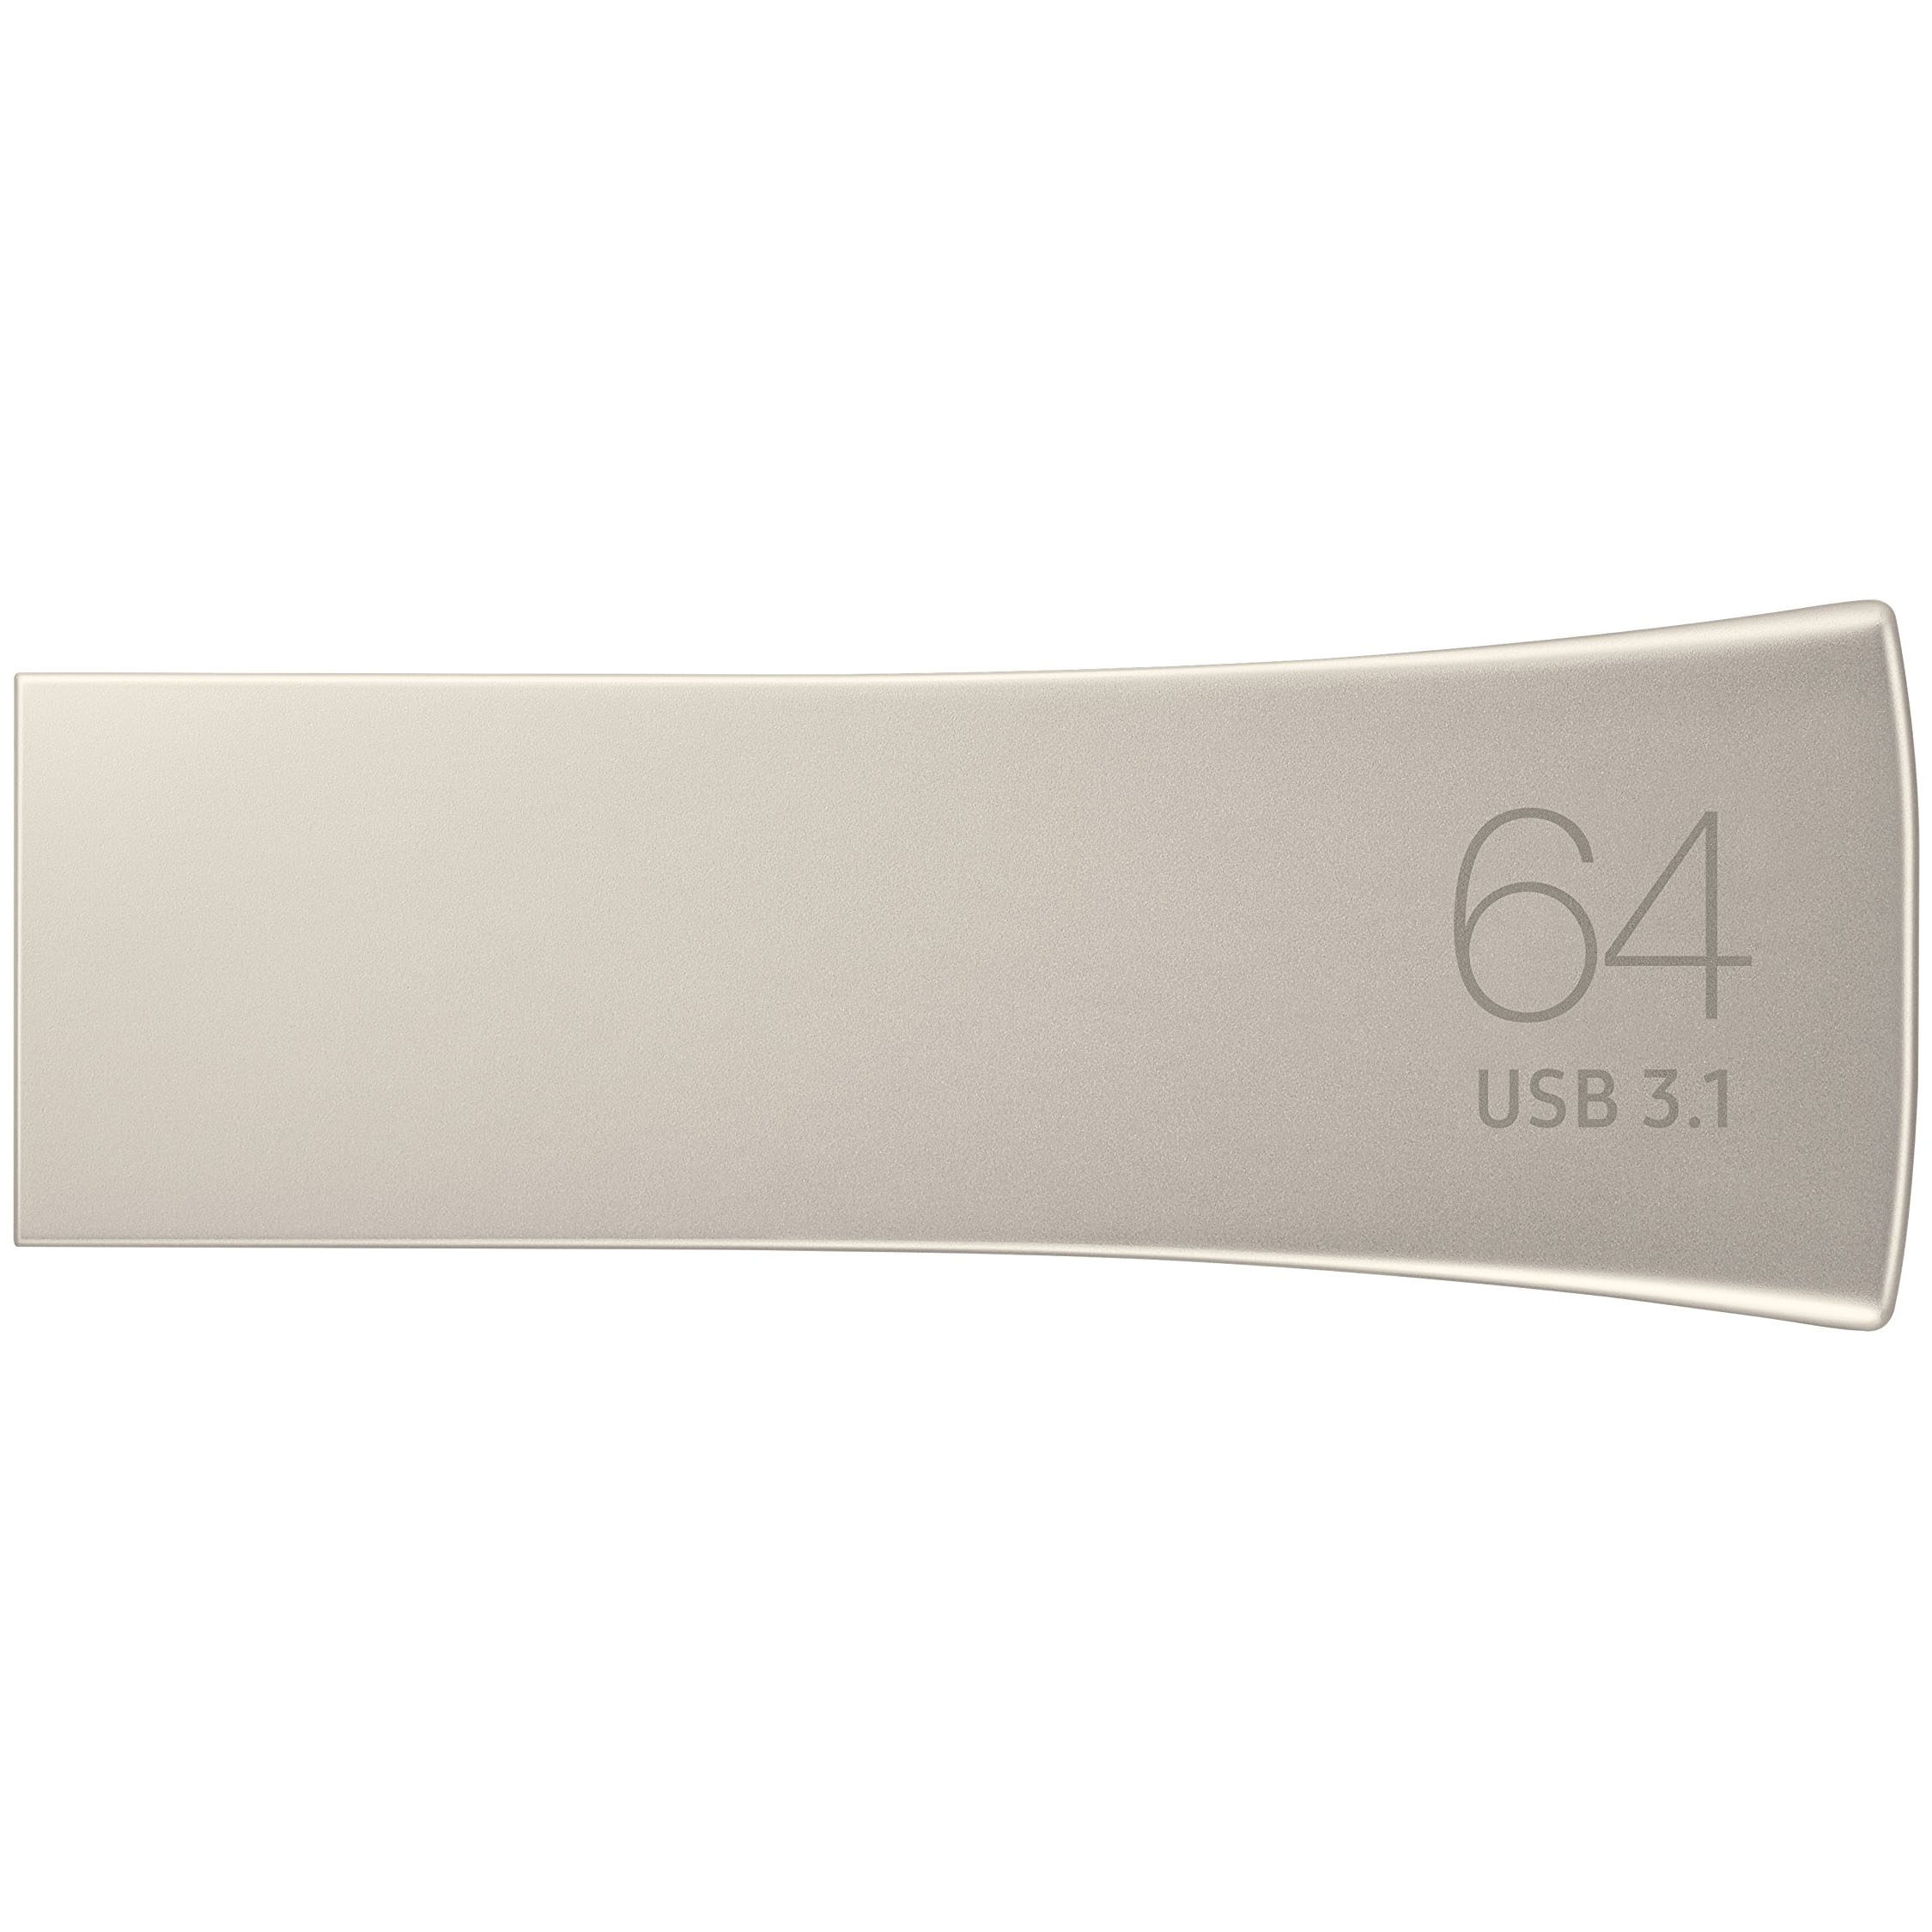 USB 64GB Samsung Bar Plus Silver 